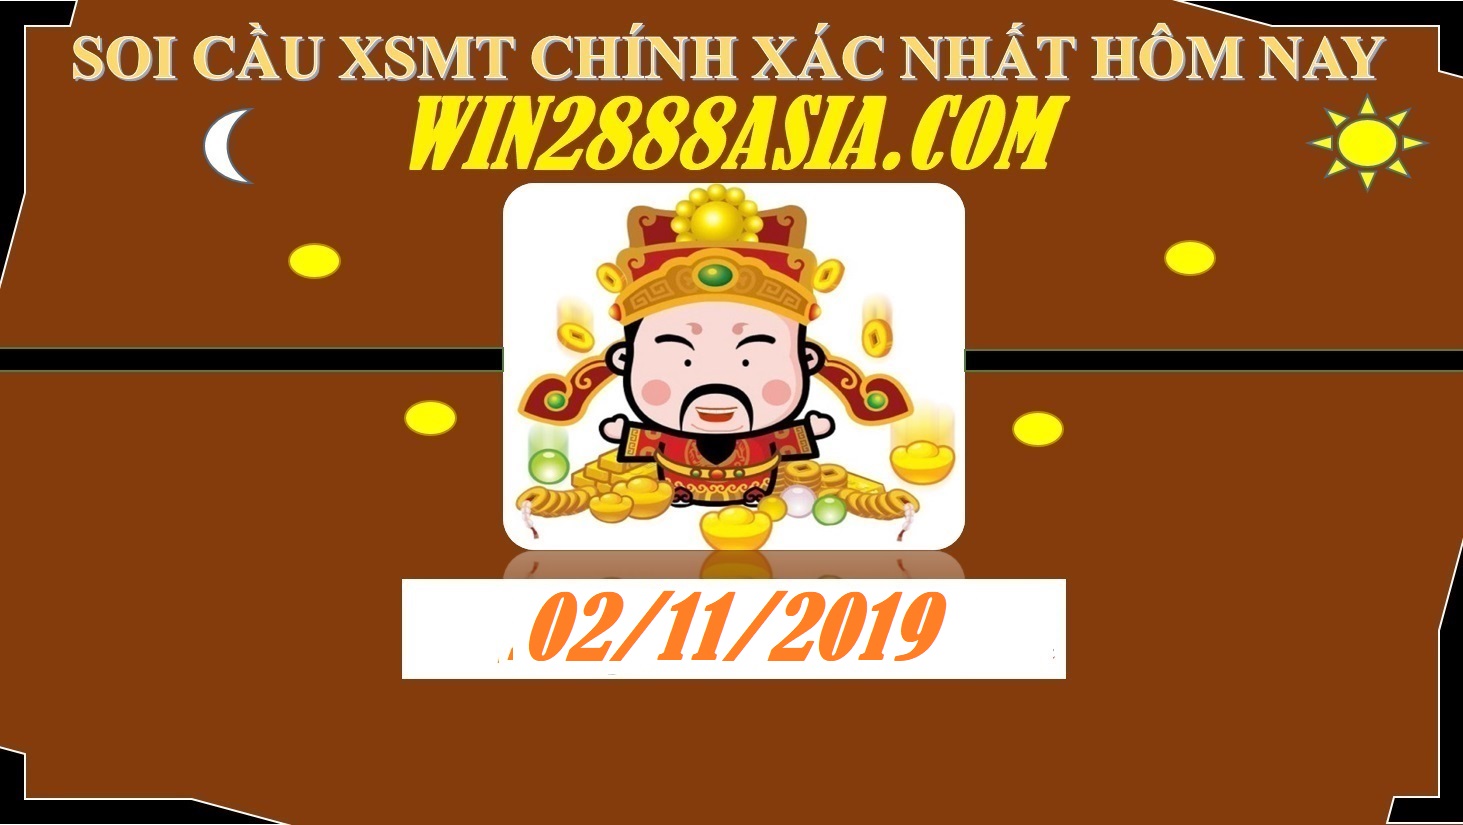 Soi cầu XSMT 2-11-2019 Win2888